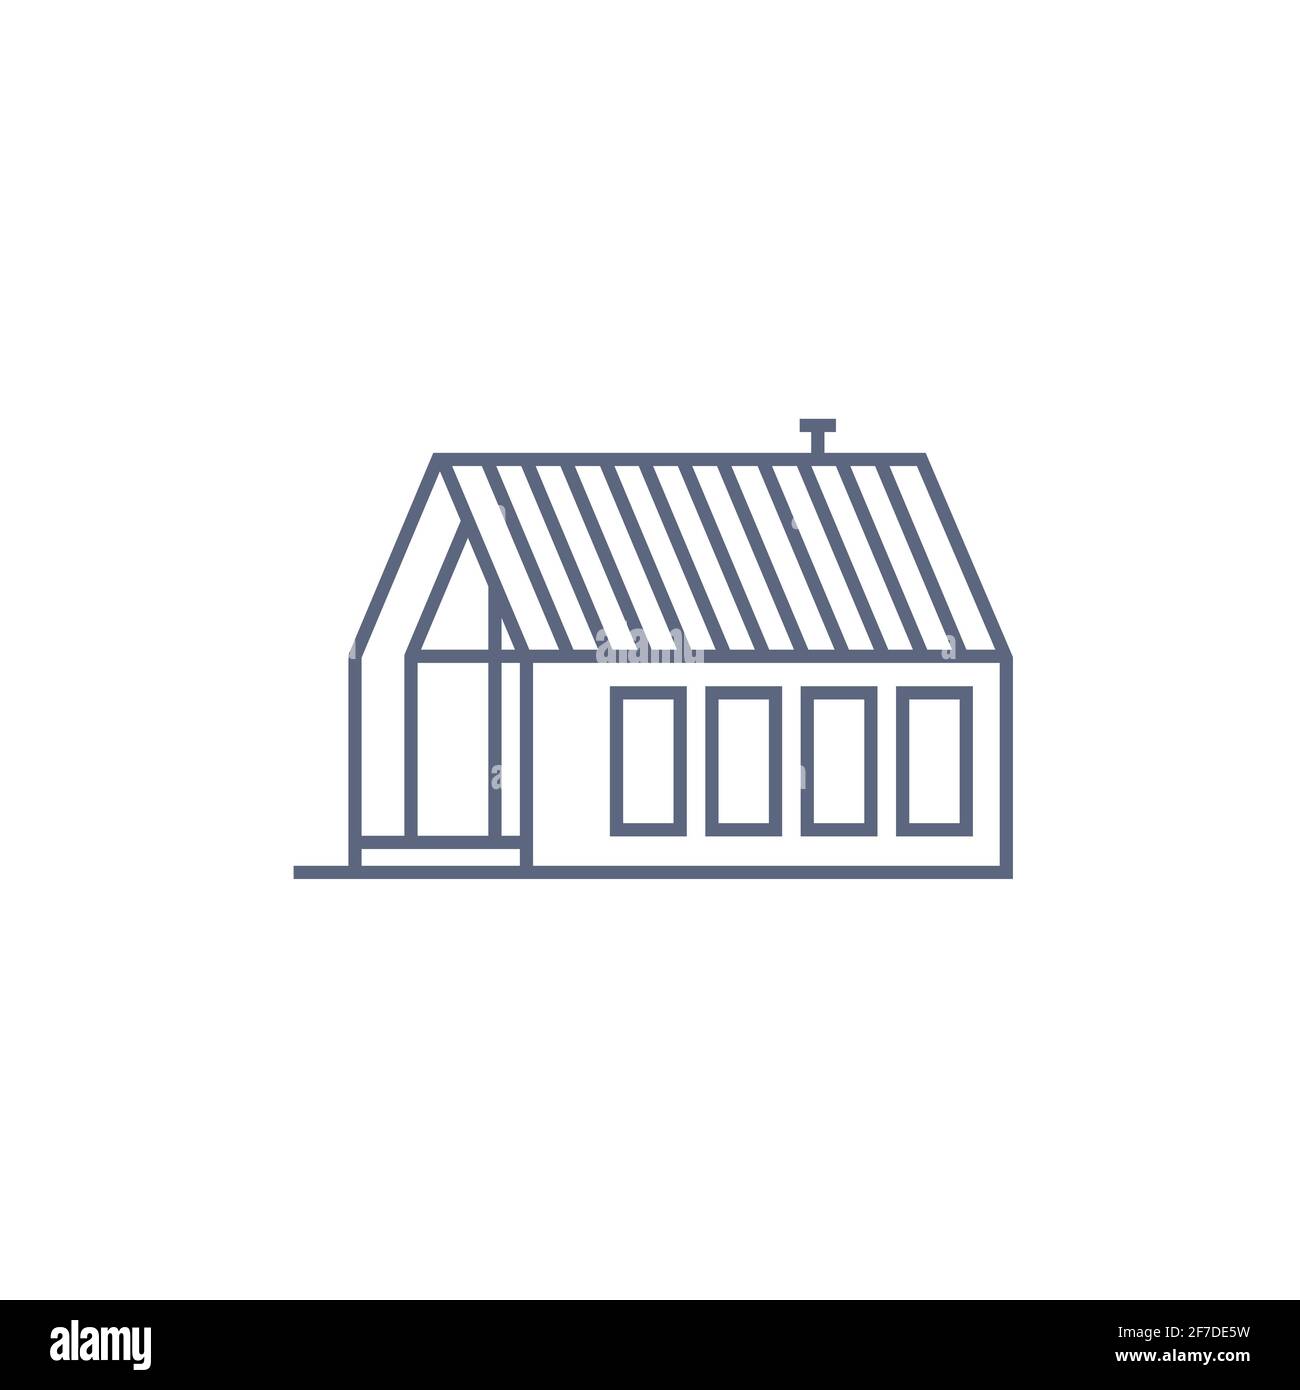 Icona linea Agriturismo - casa di villaggio o cabina in legno in stile lineare su sfondo bianco. Illustrazione vettoriale Illustrazione Vettoriale